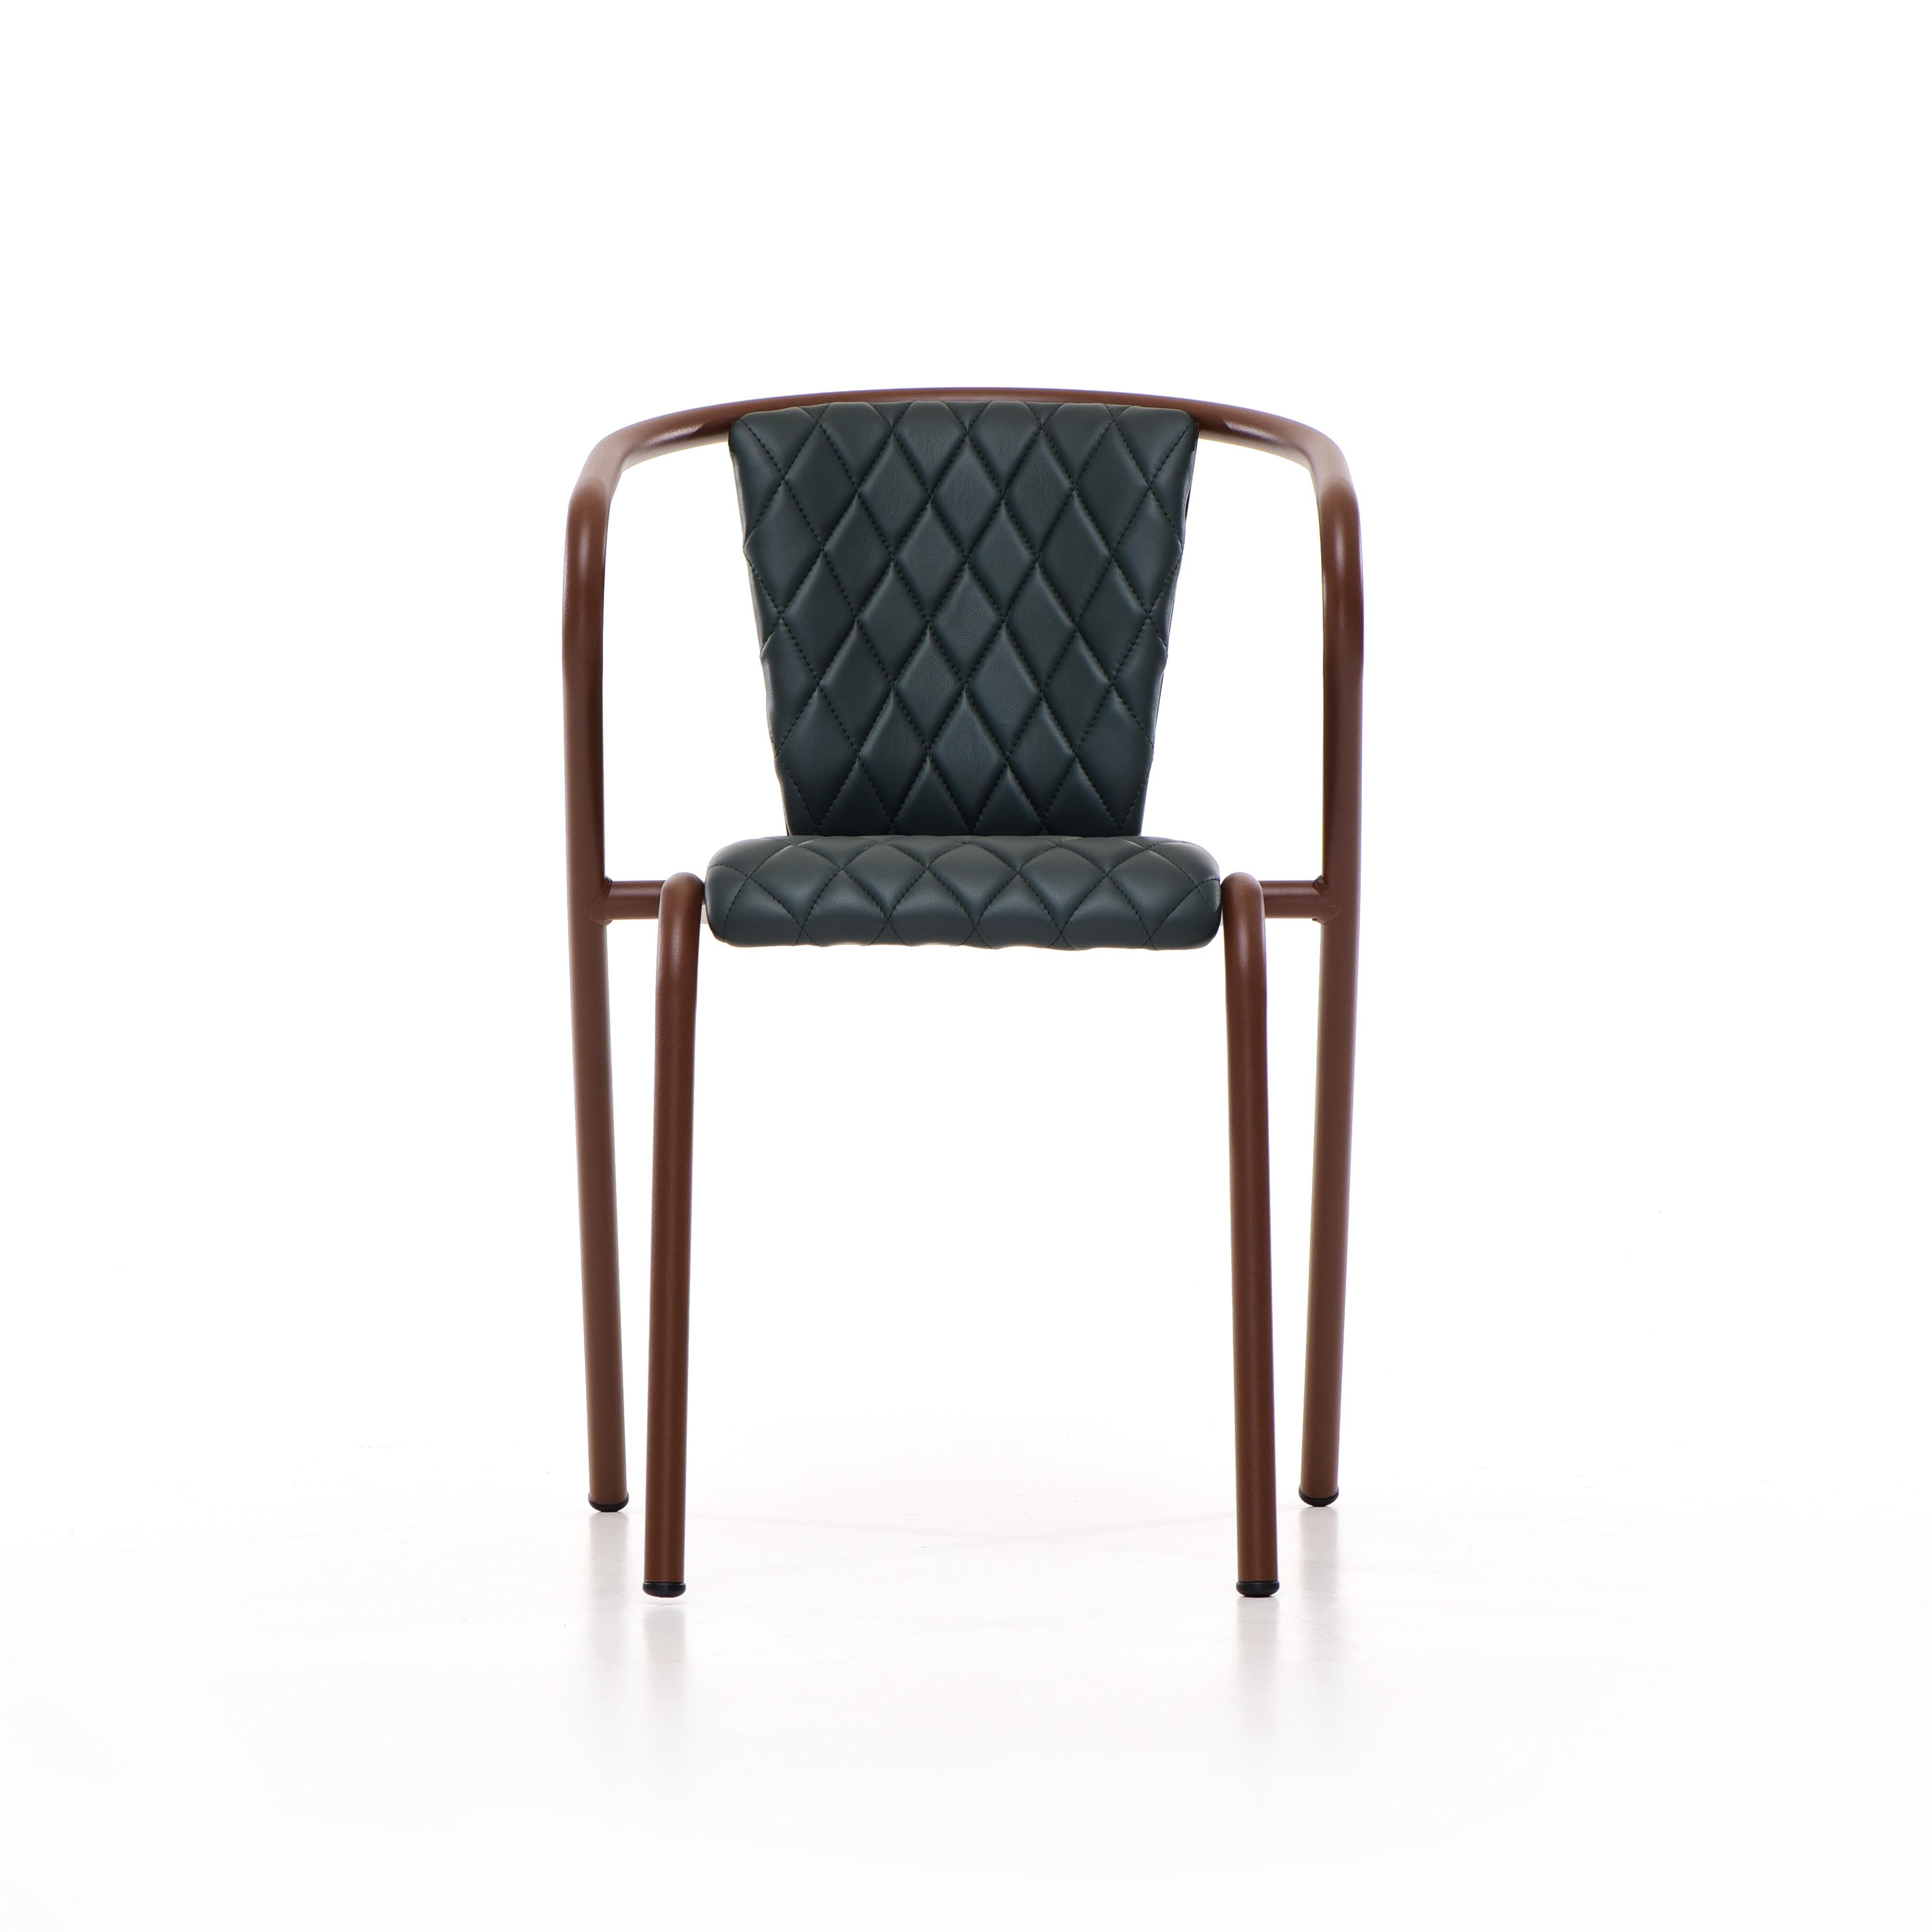 La chaise Bica est un confortable fauteuil de salle à manger empilable en acier recyclé et recyclable, fini avec notre sélection de couleurs de revêtement en poudre de première qualité, dans ce cas dans un brun riche texturé, qui transforme un